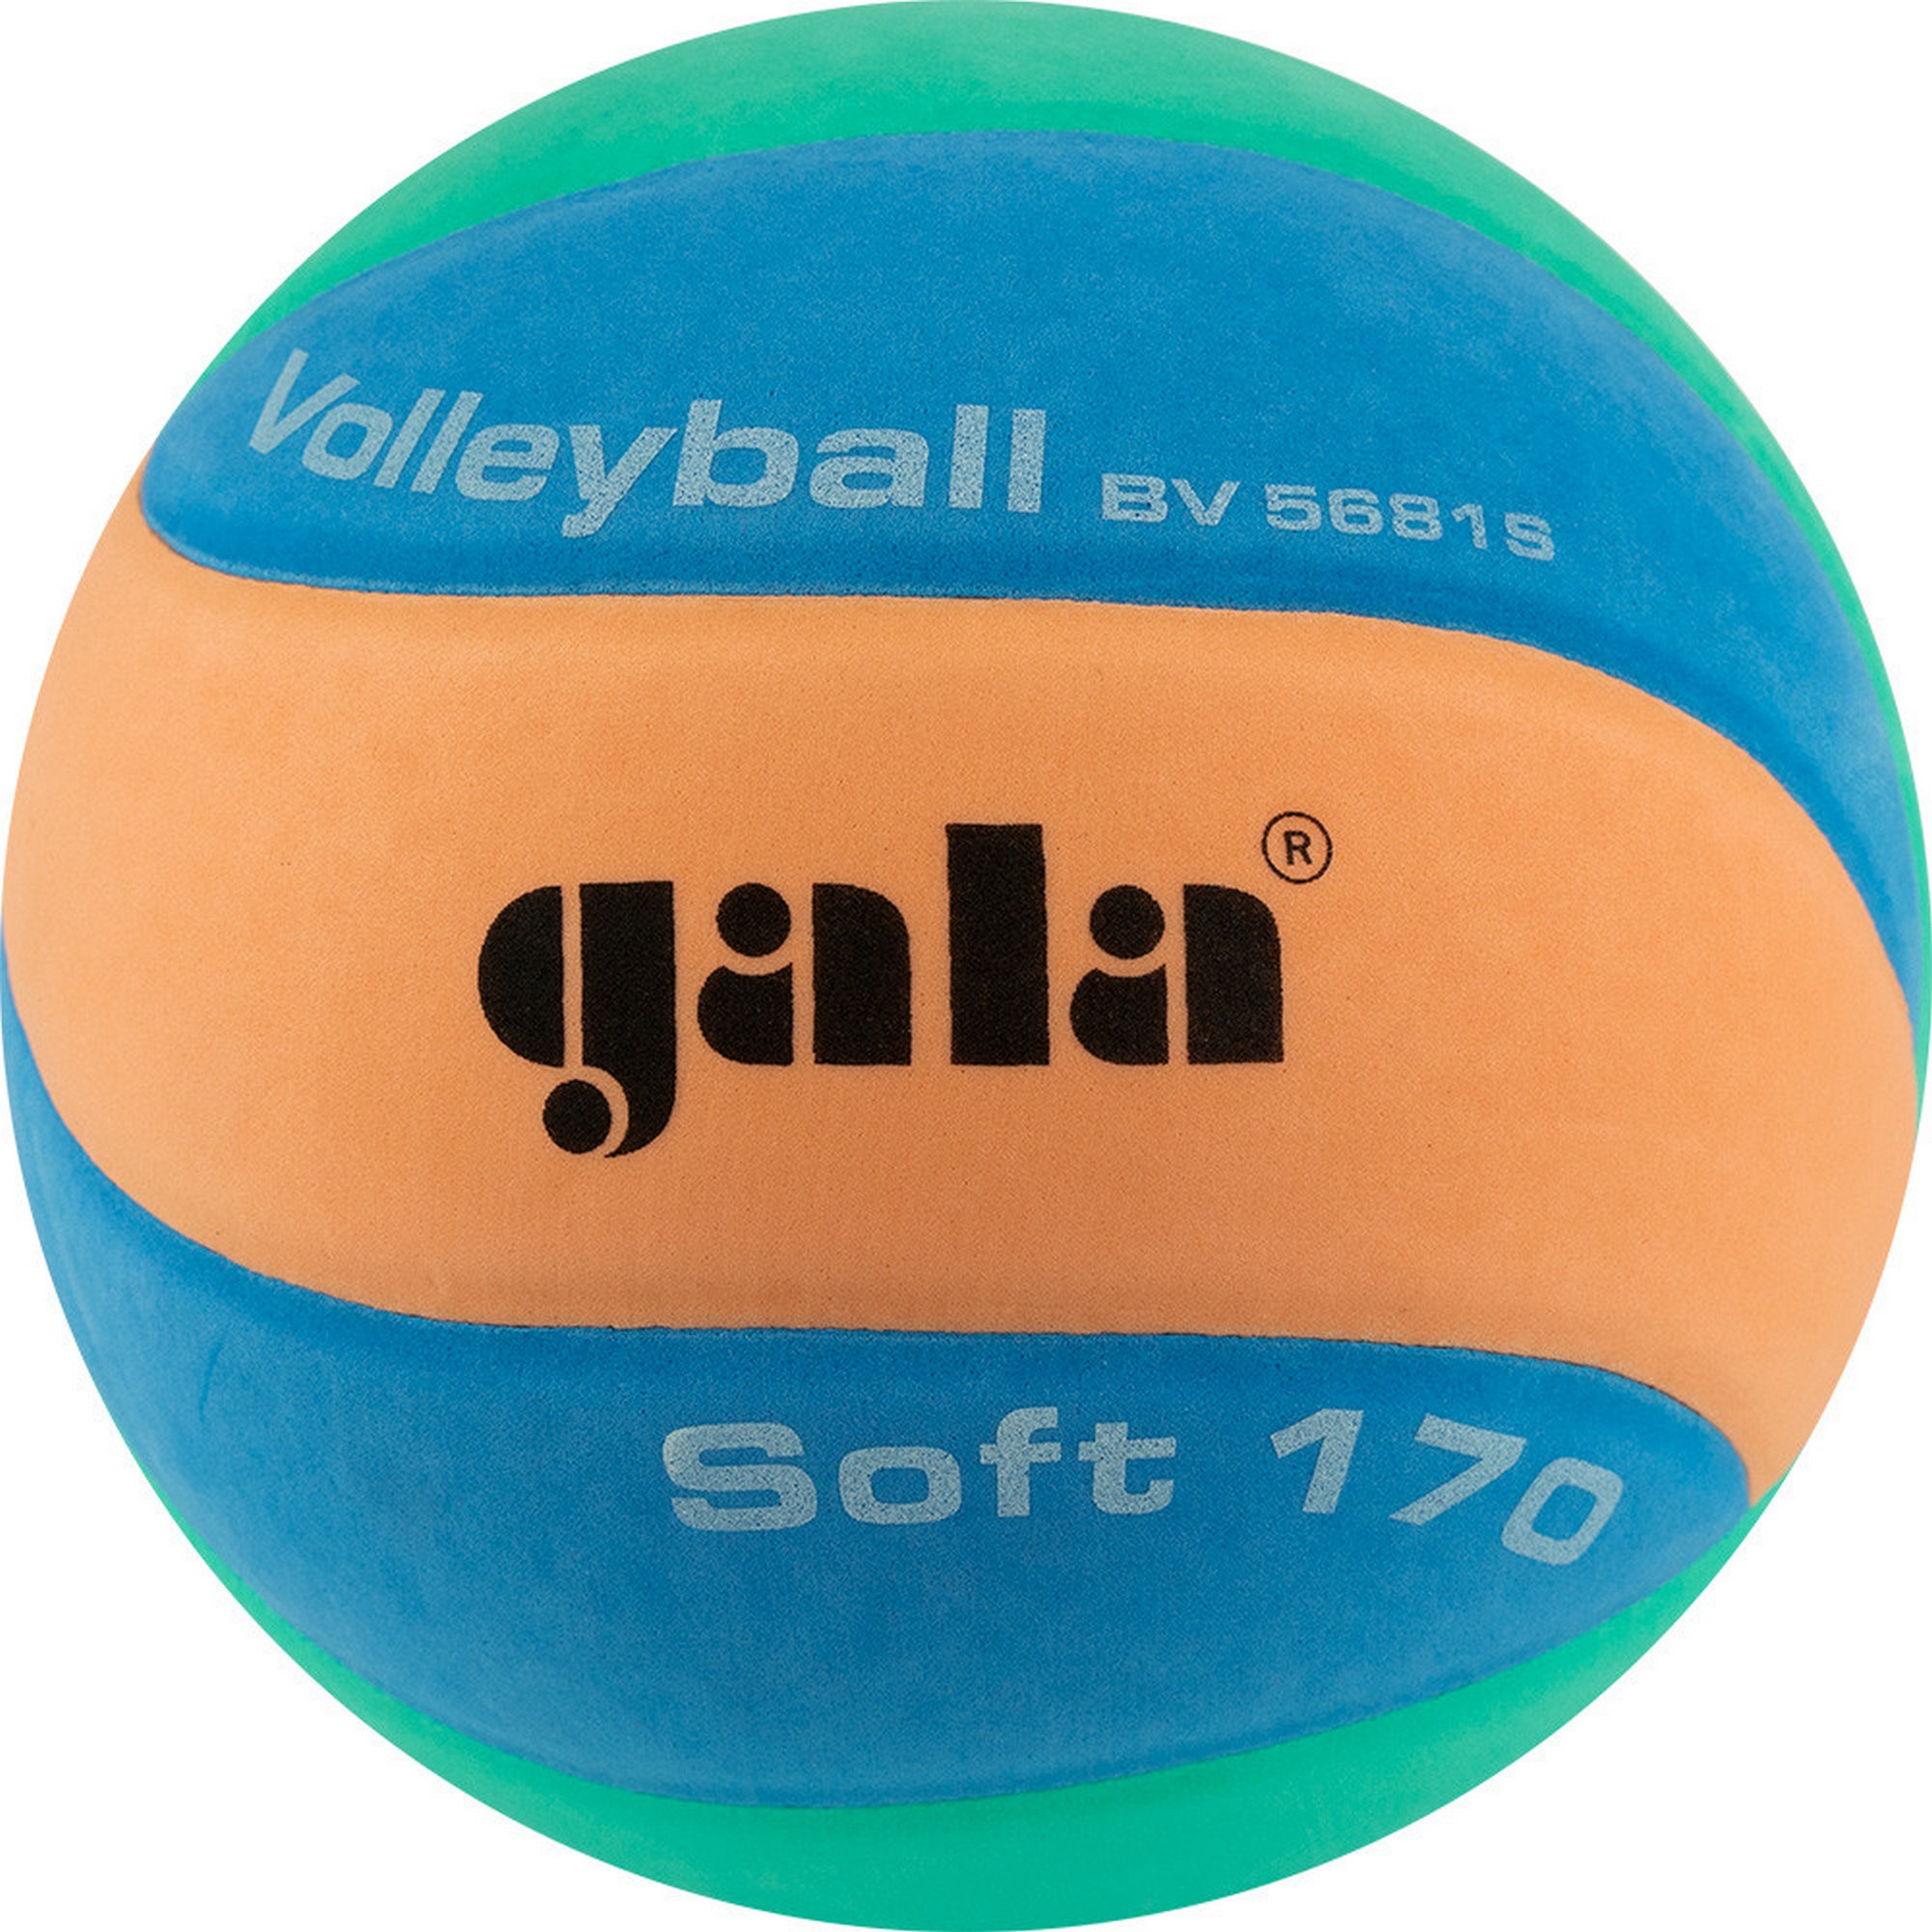 Купить Мяч волейбольный Gala 170 Soft 10 BV5681S р. 5,